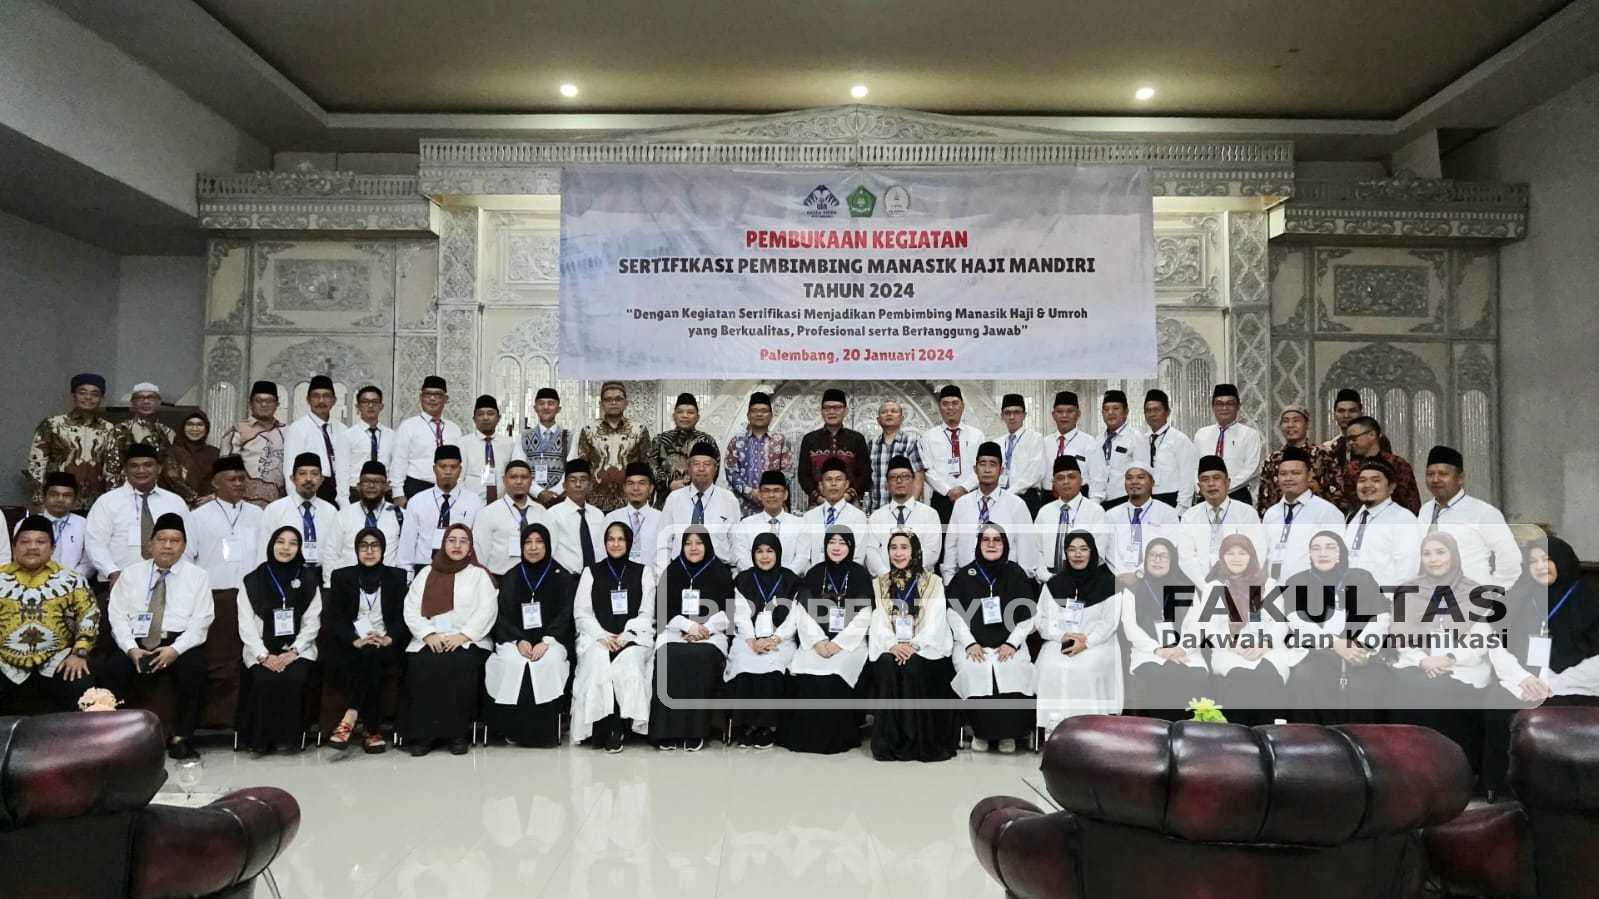 55 Peserta Ikuti Sertifikasi Pembimbing Manasik Haji Mandiri